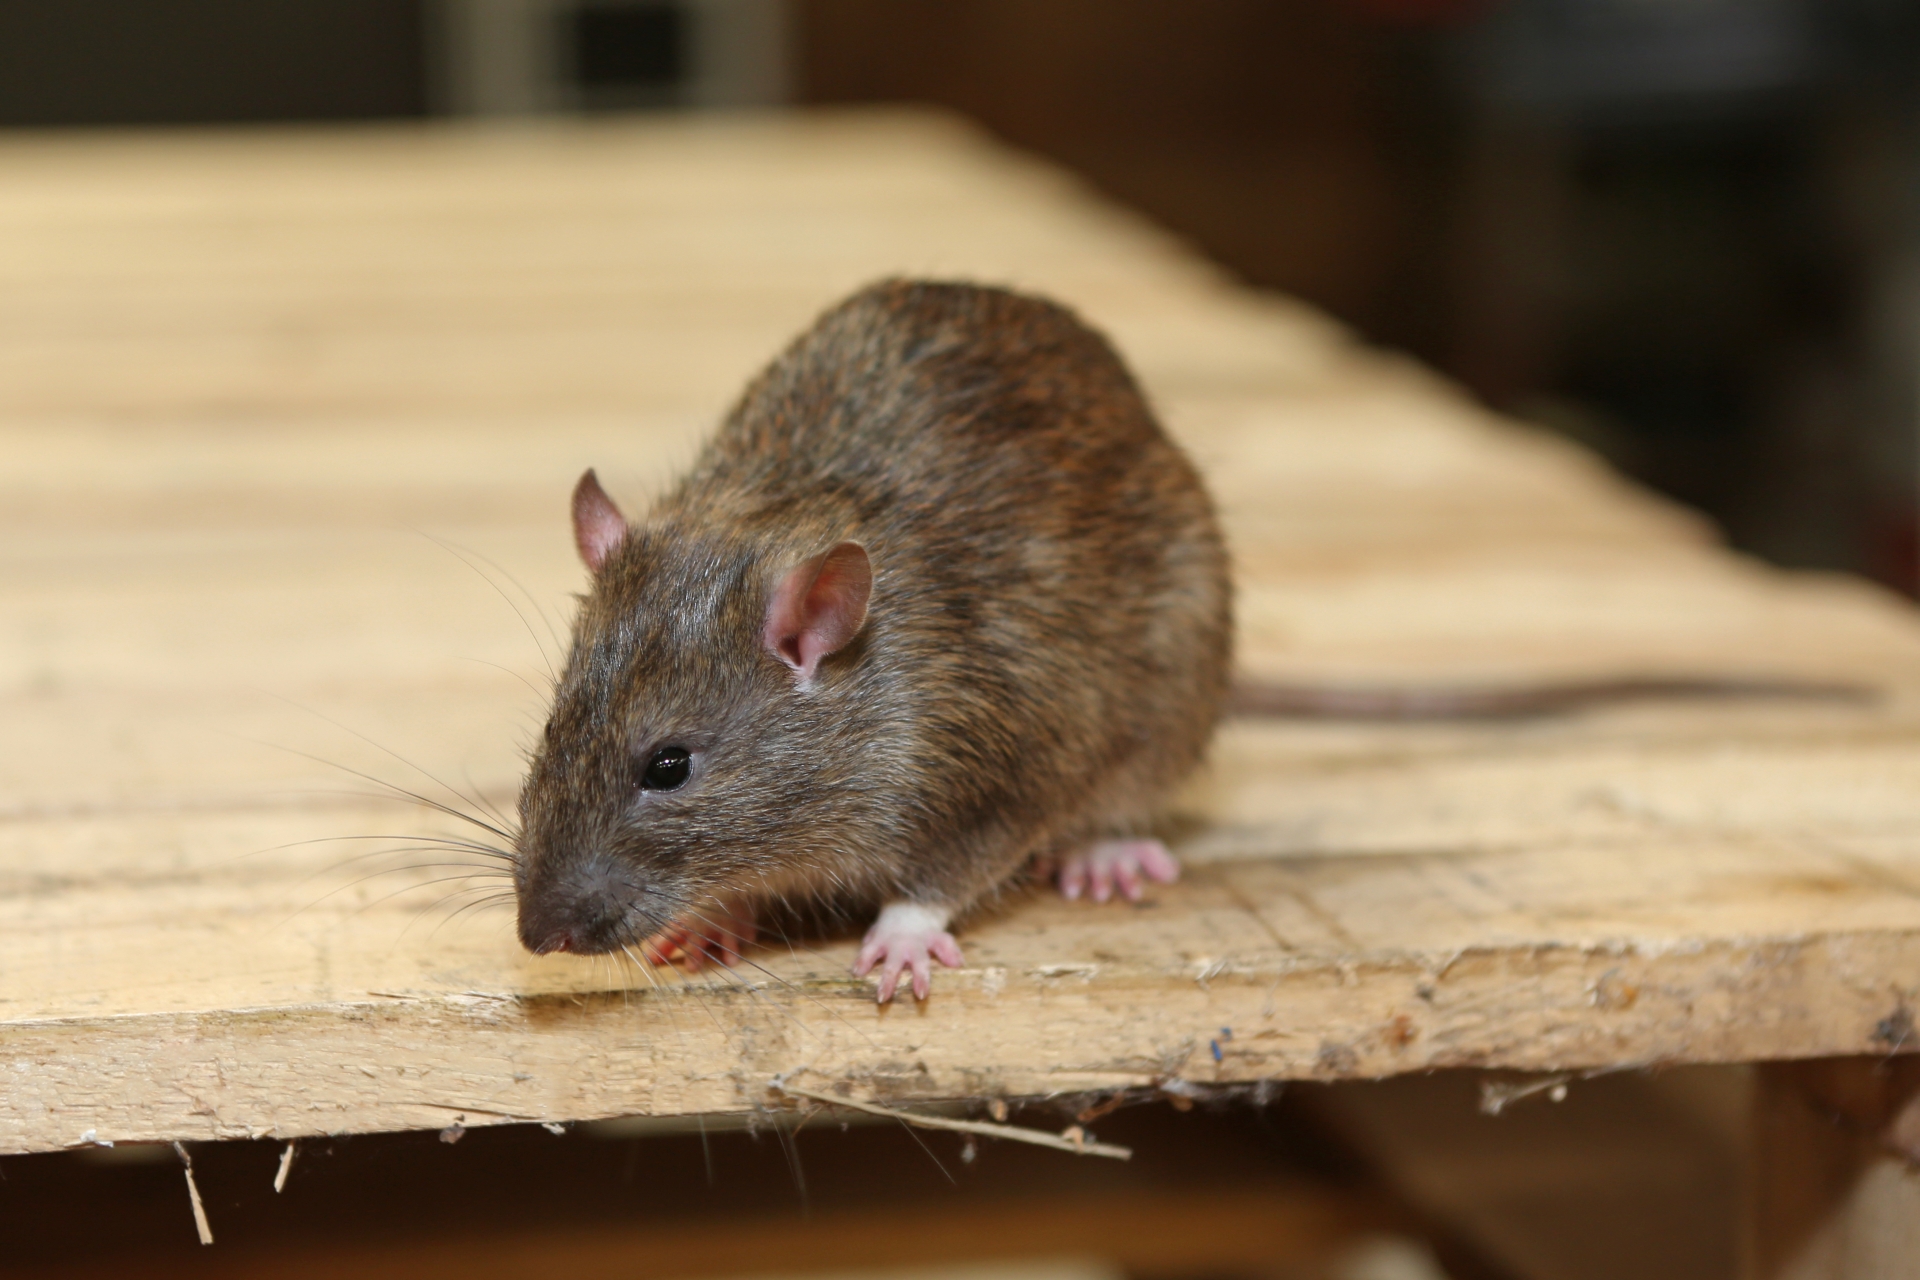 Rat extermination, Pest Control in Feltham, Hanworth, TW13. Call Now 020 8166 9746